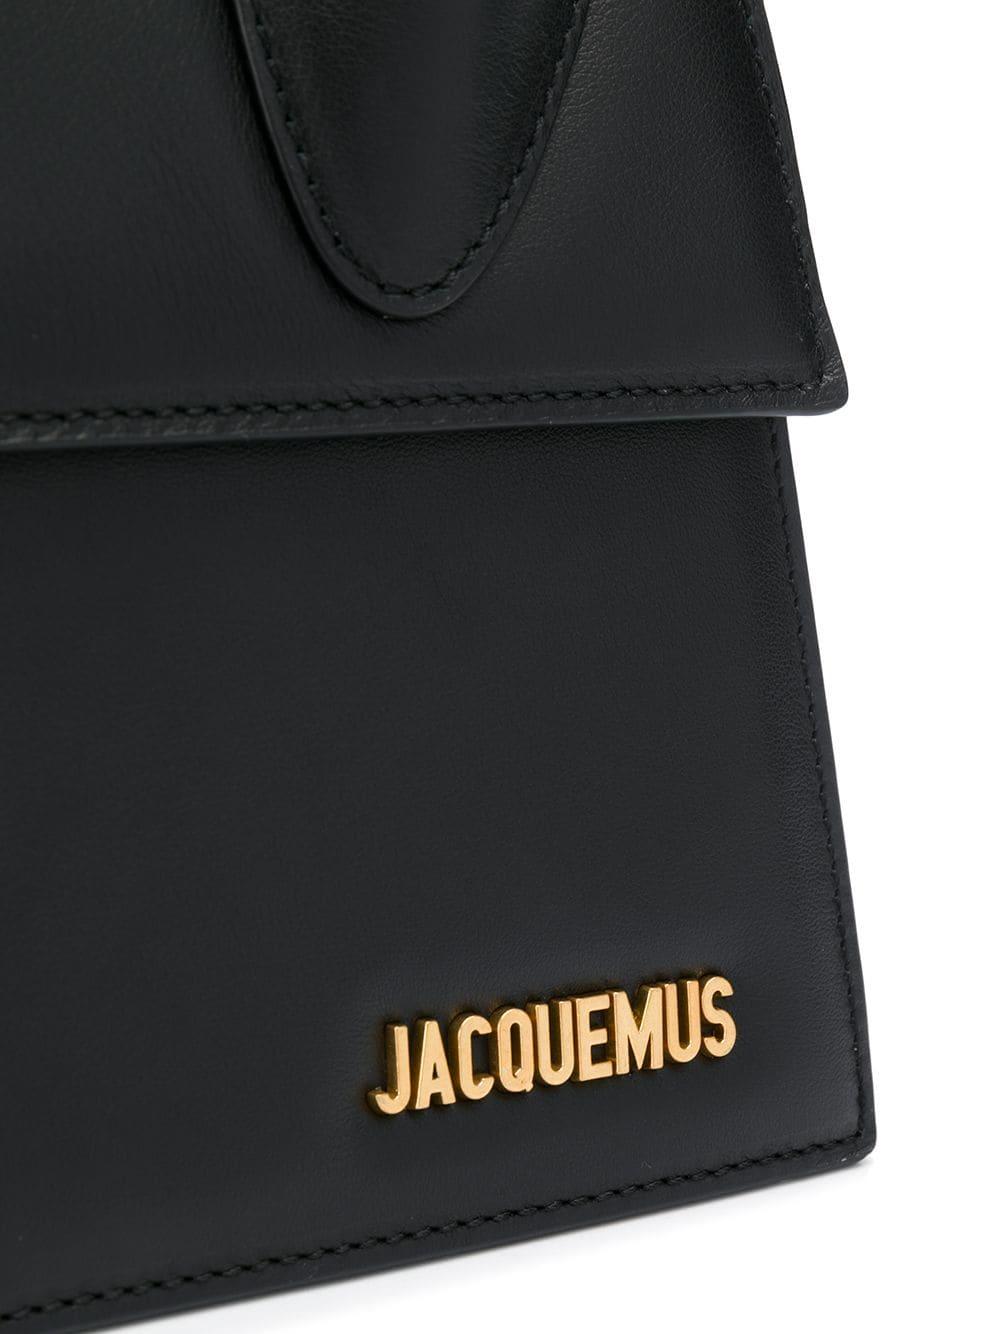 Jacquemus Logo Plaque Tote Bag in Black - Lyst